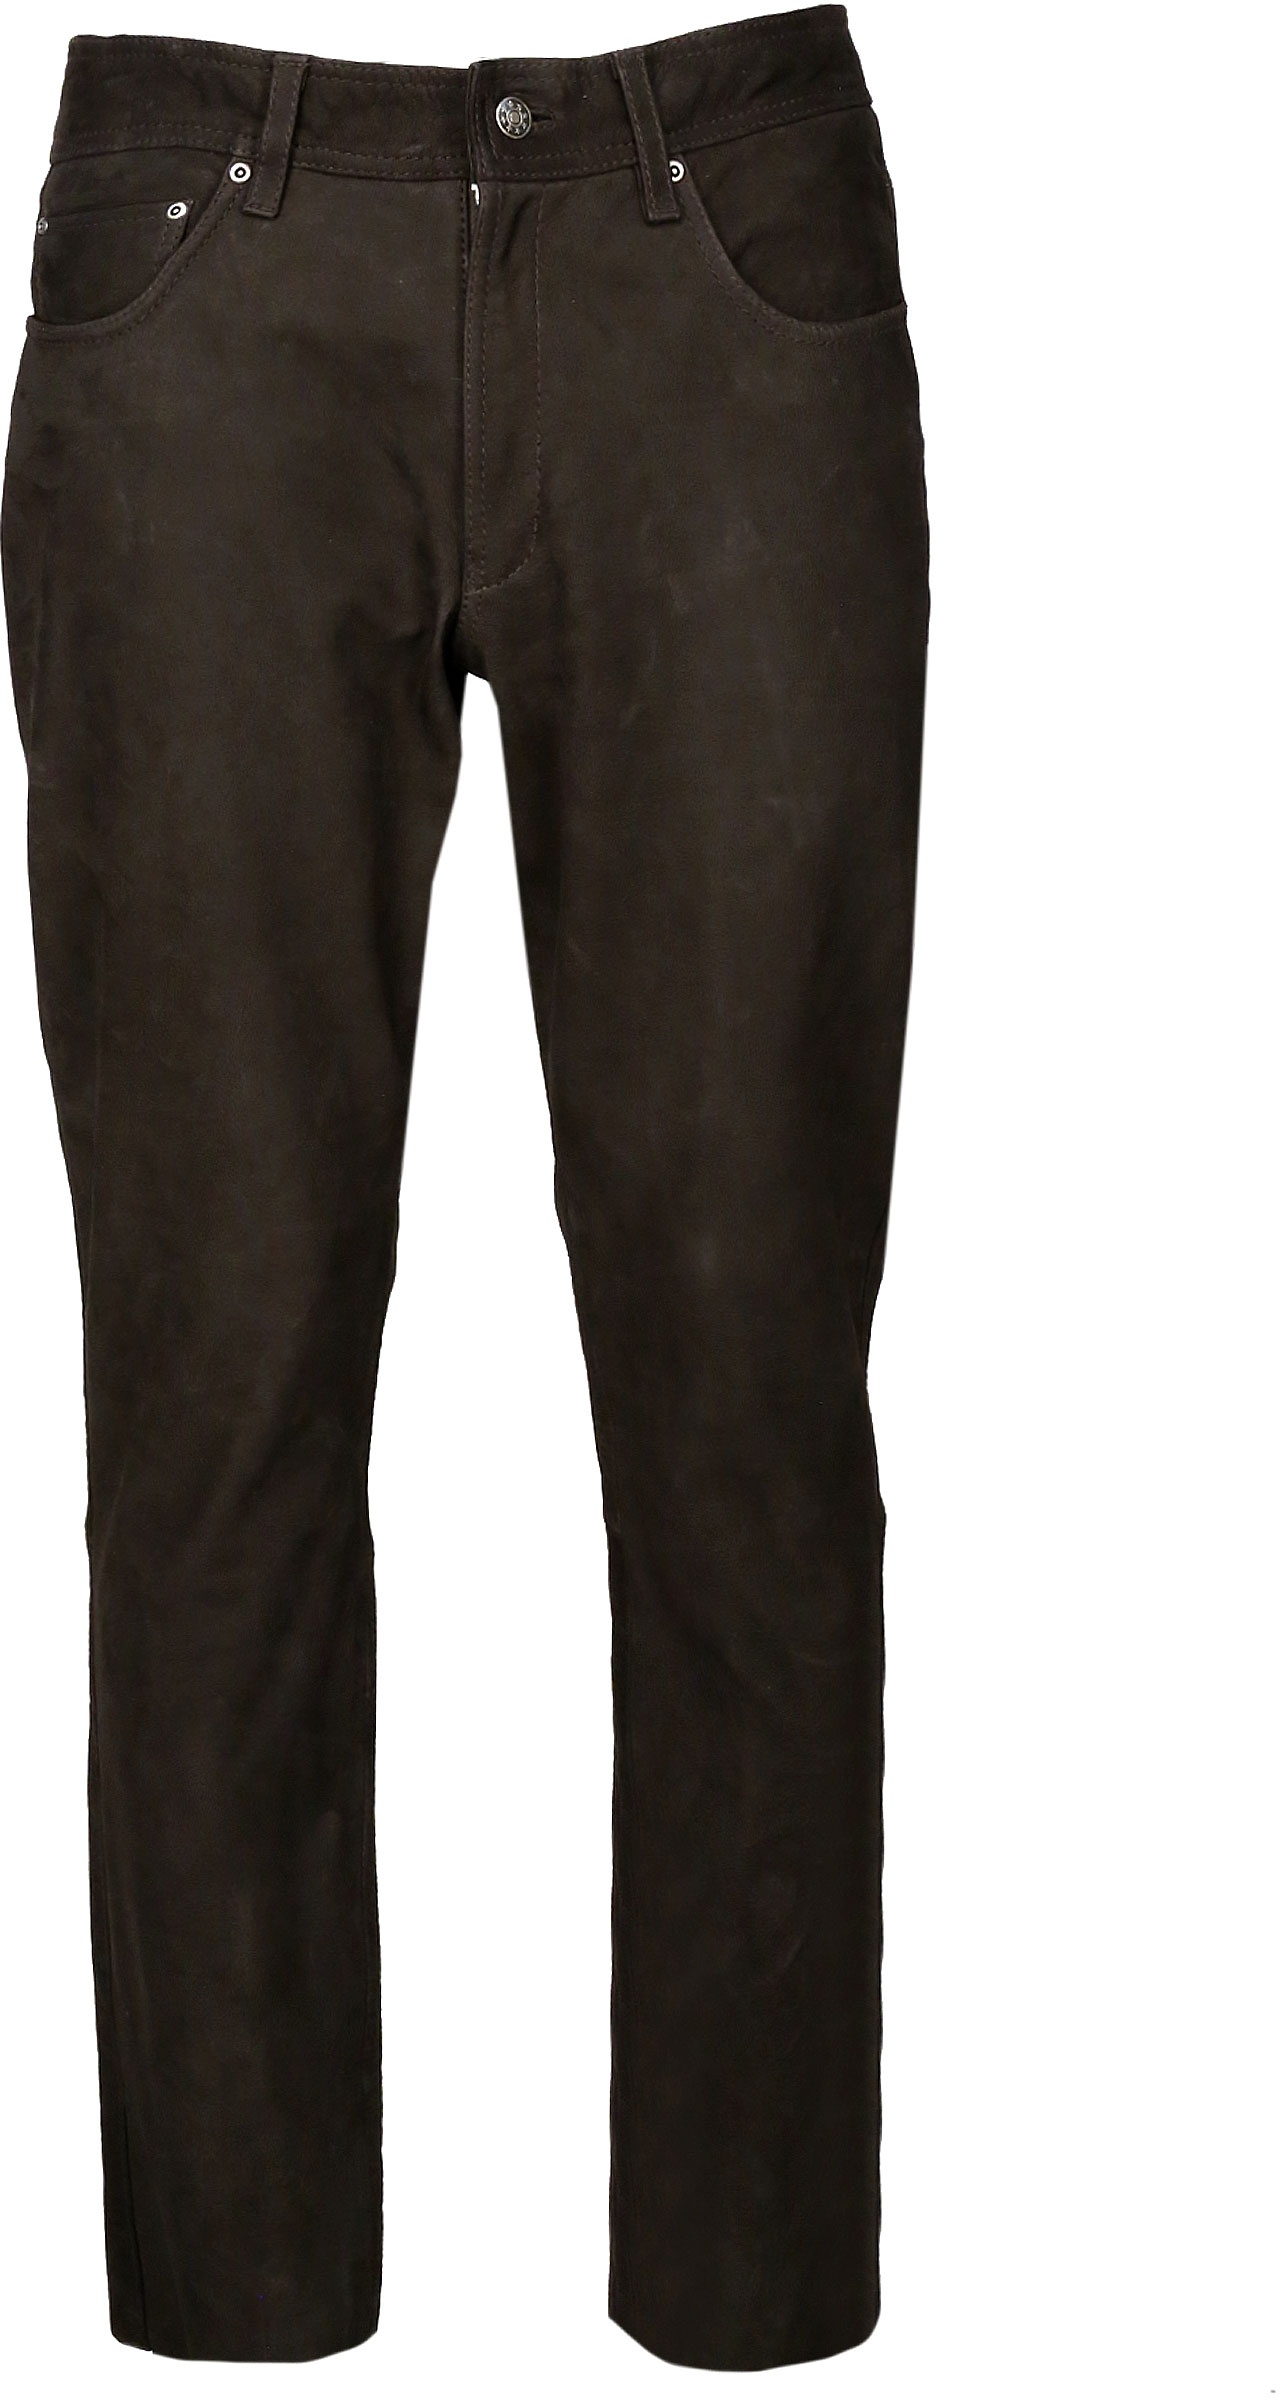 JCC Phill, pantalon en cuir - Marron Foncé - 50